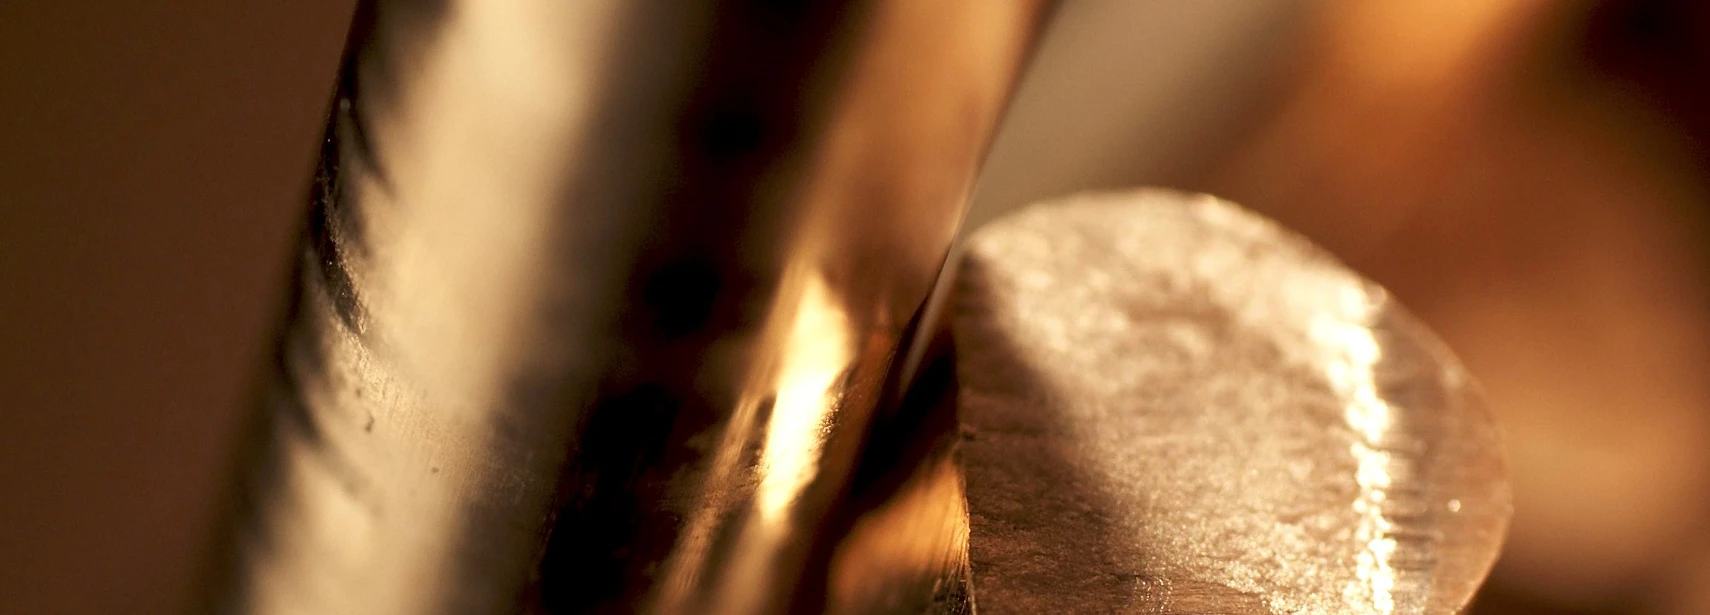 Rolex - Boite d'Or Alba